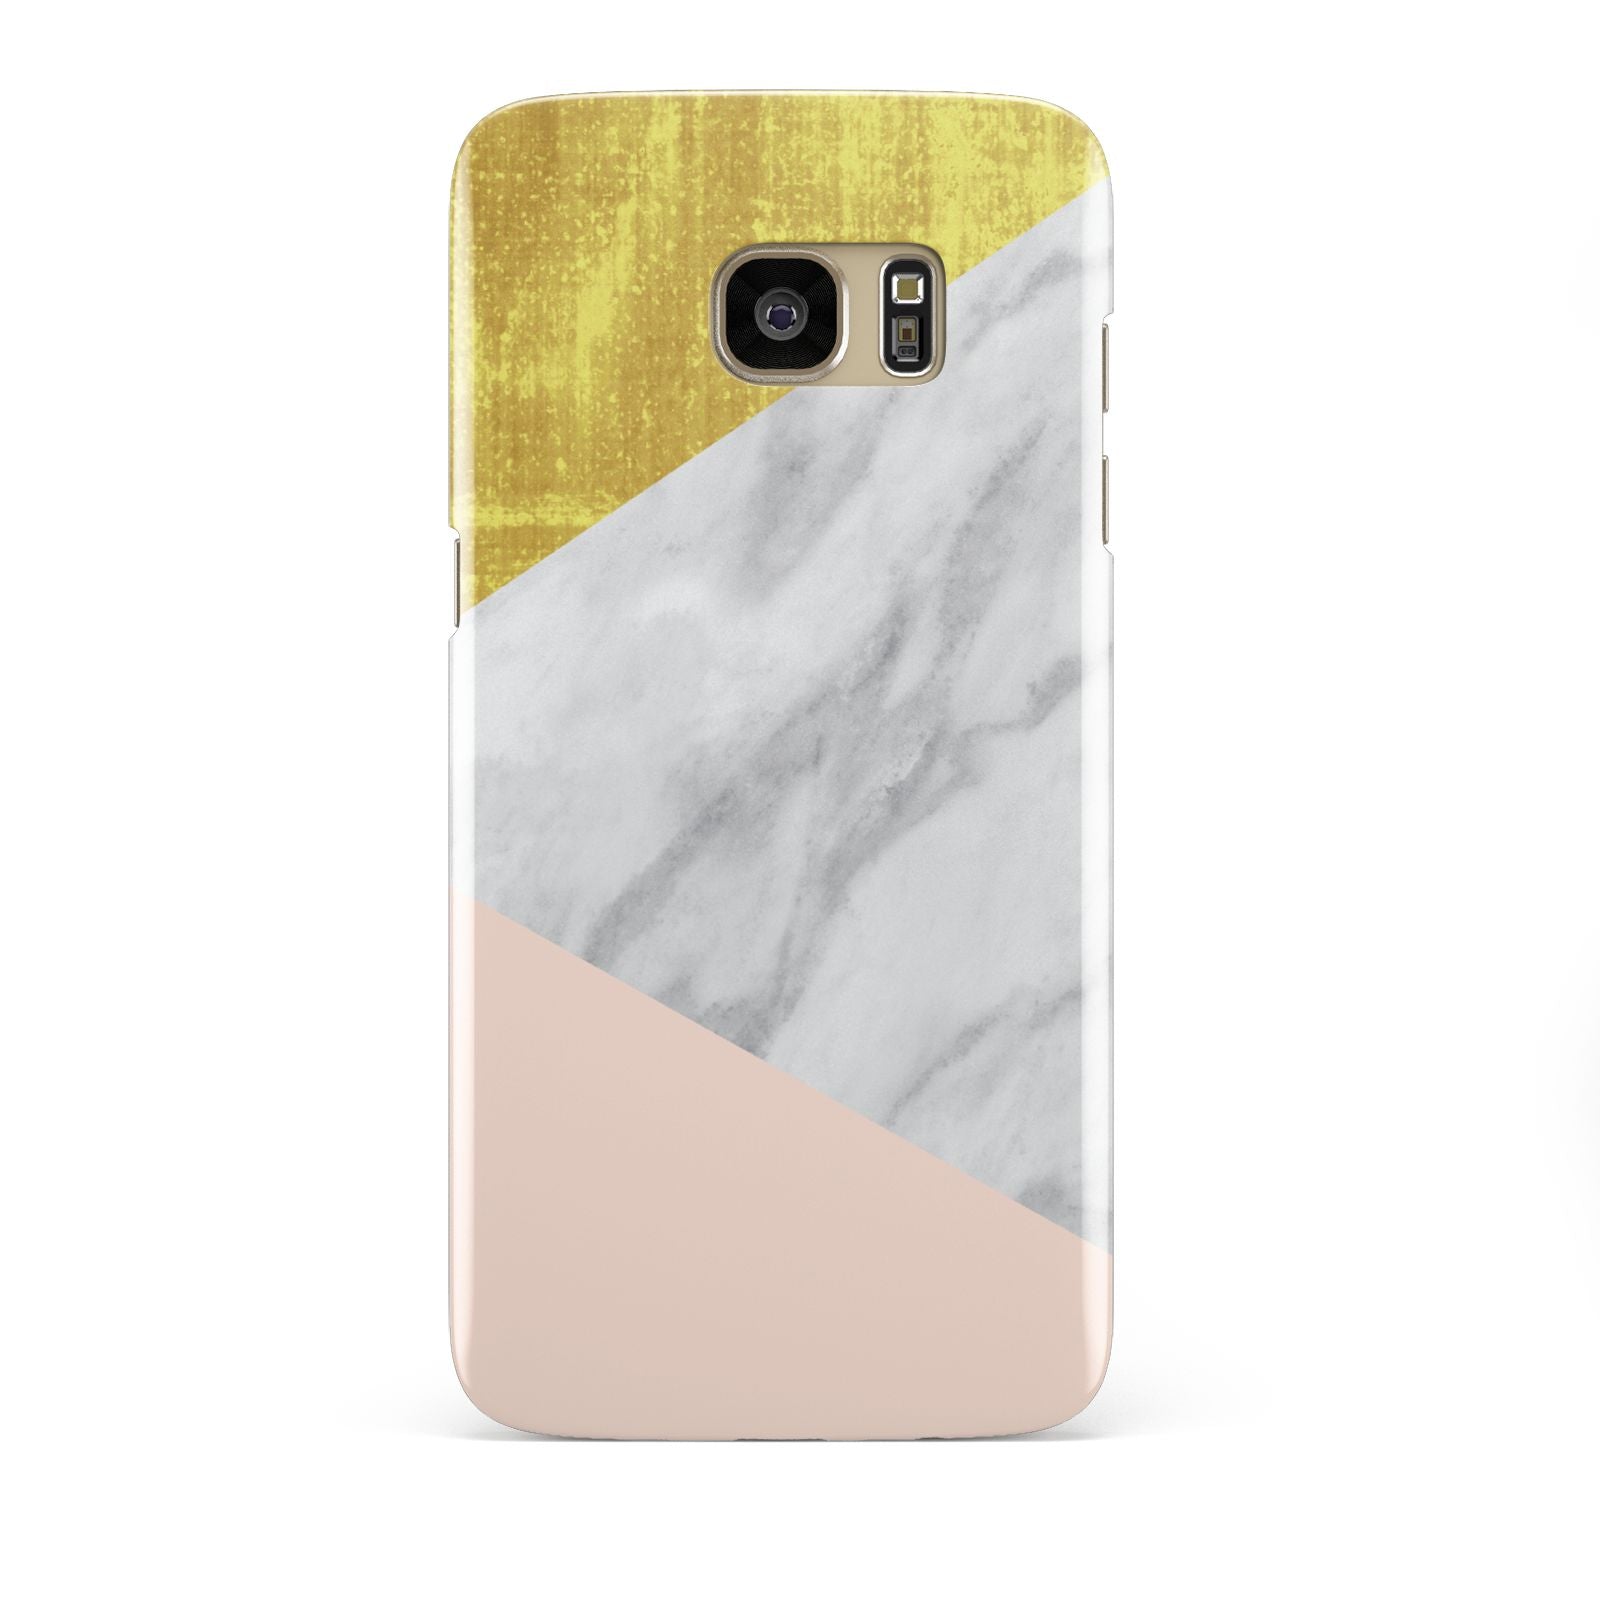 Marble White Gold Foil Peach Samsung Galaxy S7 Edge Case